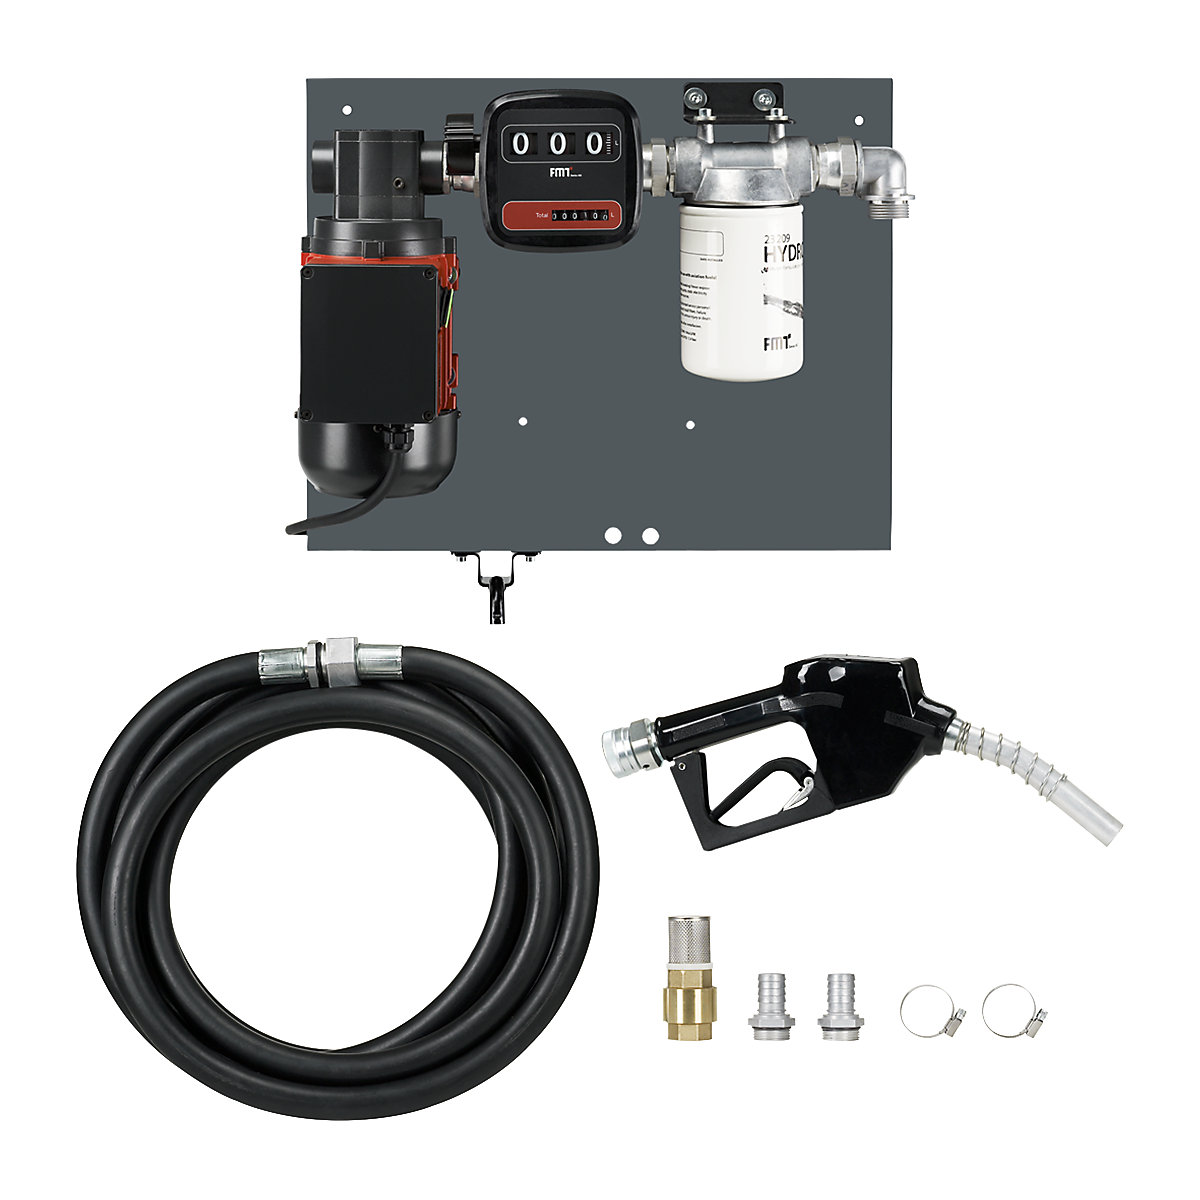 Pompa per vuoto rotativa per gasolio/diesel – PRESSOL: autoaspirante, con  bypass integrato